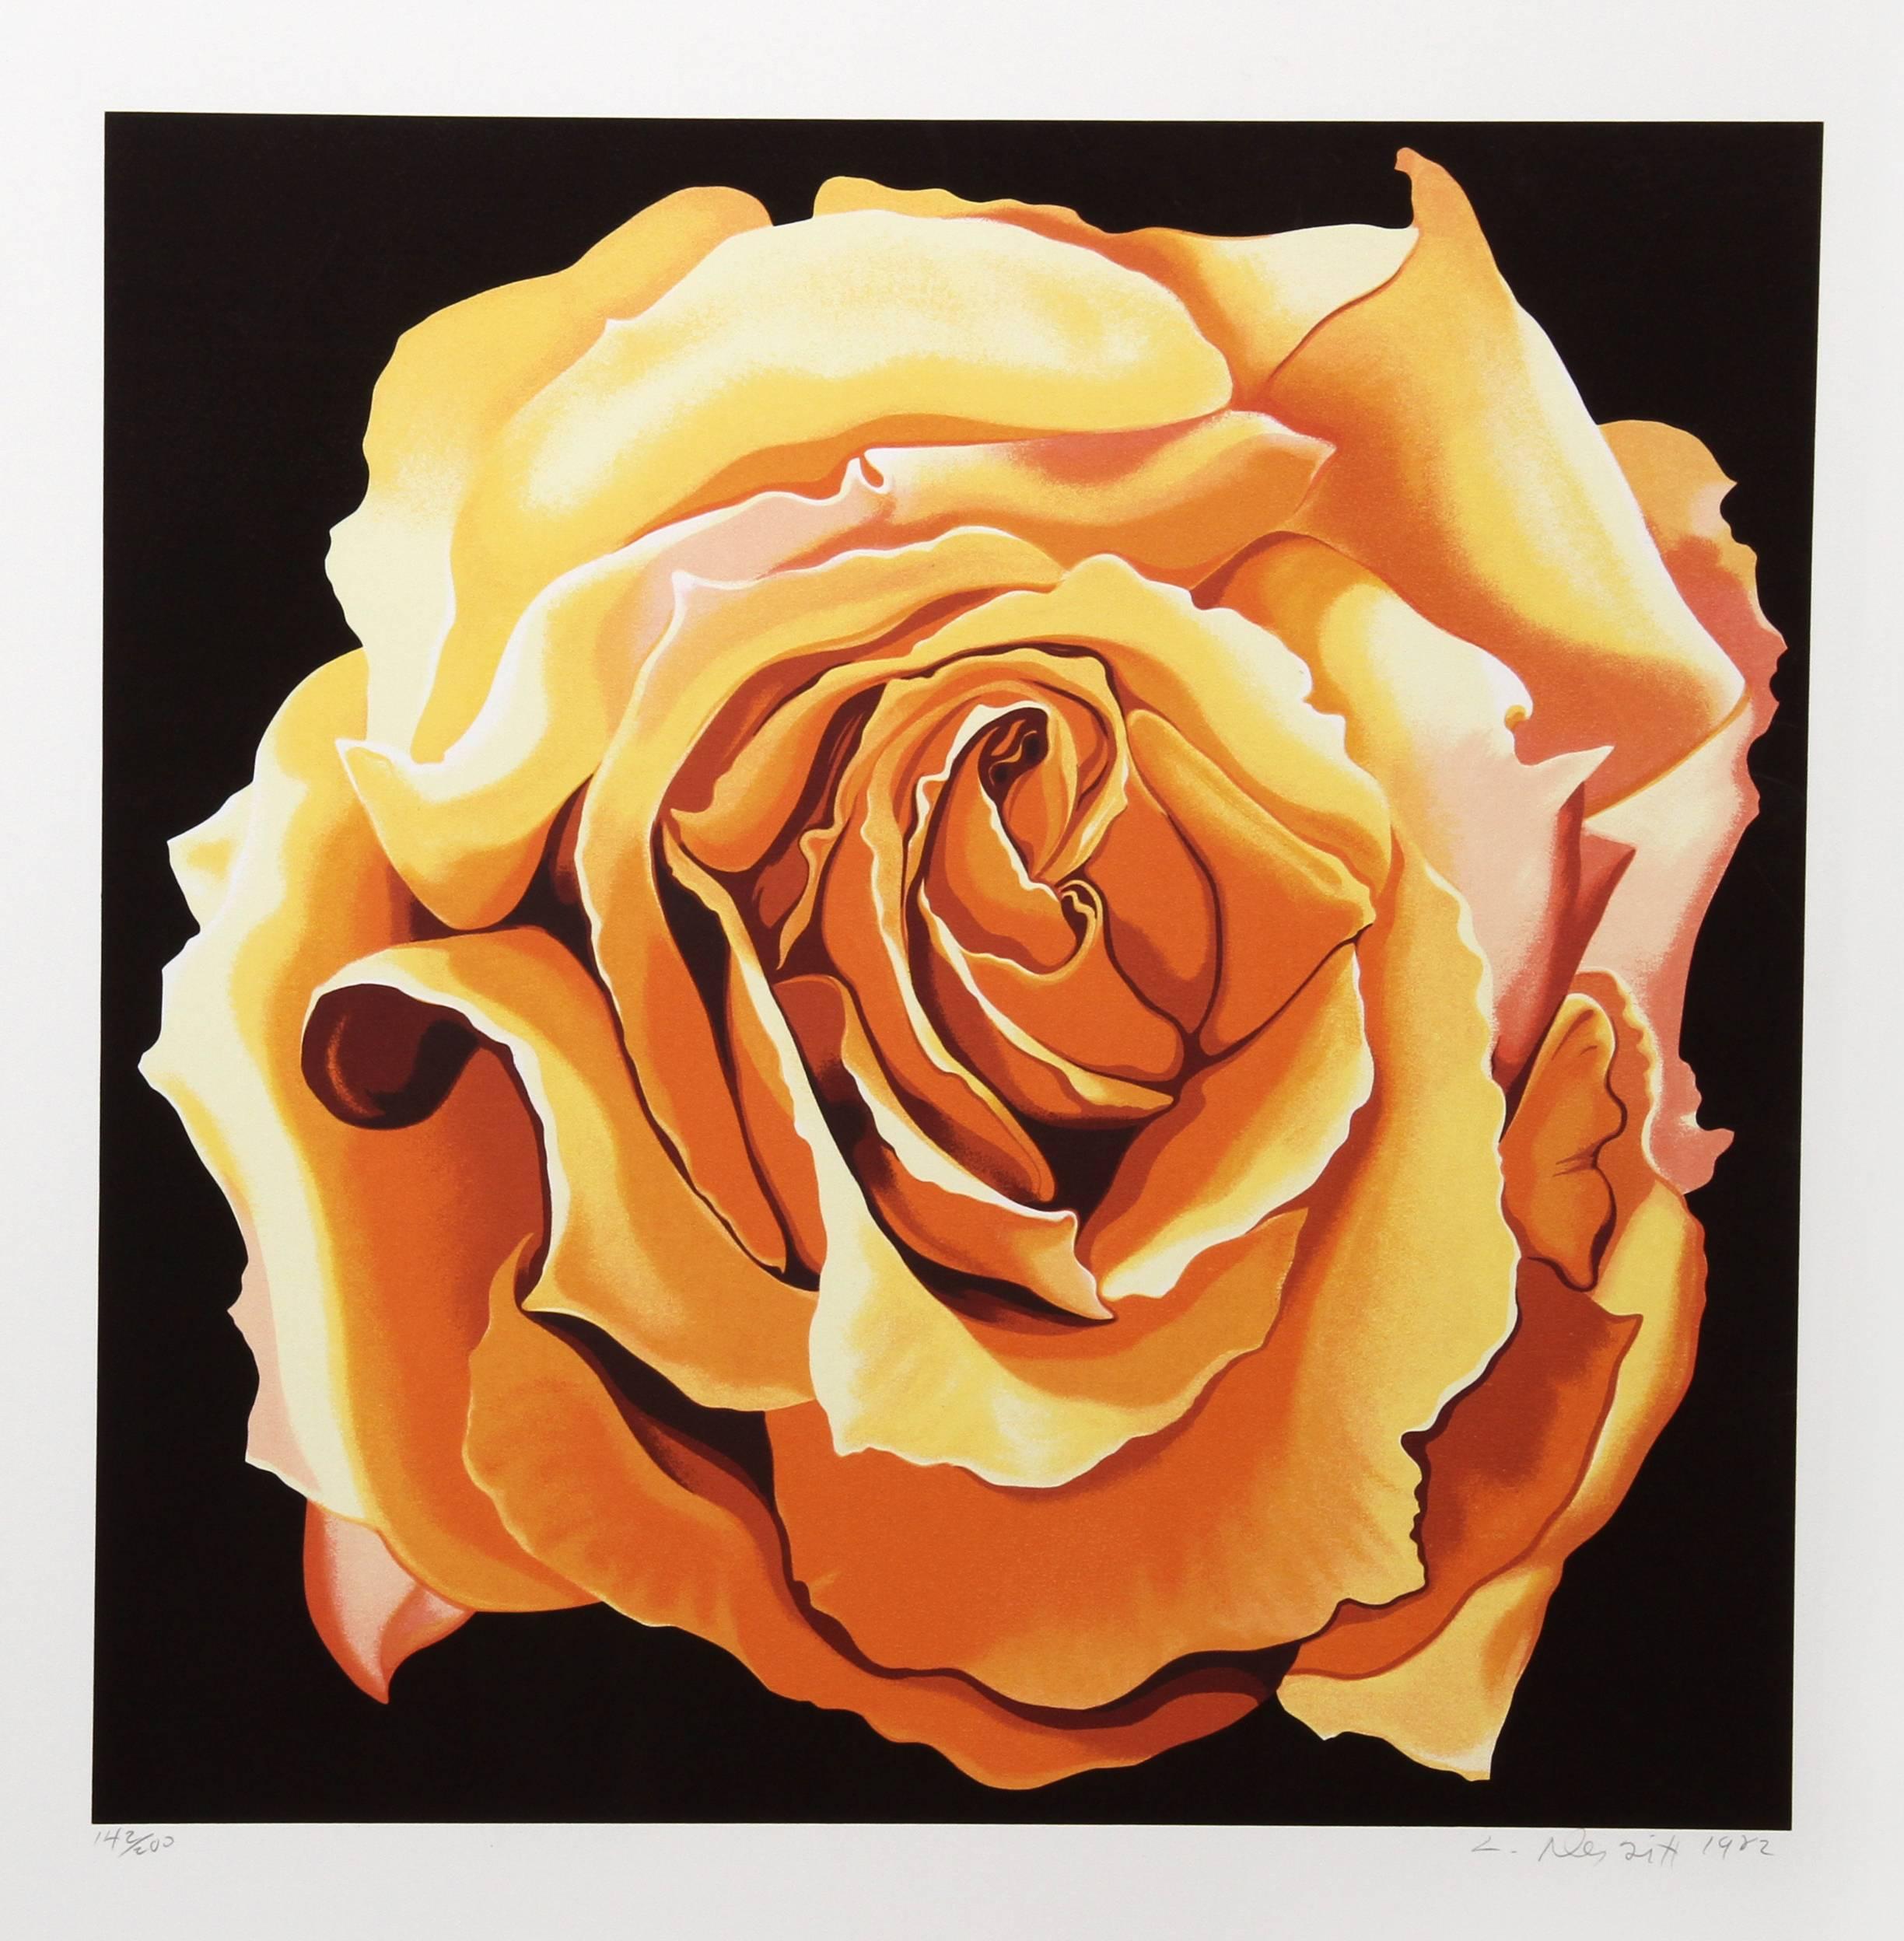 Künstler: Lowell Blair Nesbitt, Amerikaner (1933 - 1993)
Titel: Gelbe Rose
Jahr: 1982
Medium: Siebdruck, signiert und nummeriert mit Bleistift
Auflage: 200
Bildgröße: 25 x 25 Zoll
Größe: 33 Zoll x 31 Zoll (83,82 cm x 78,74 cm)